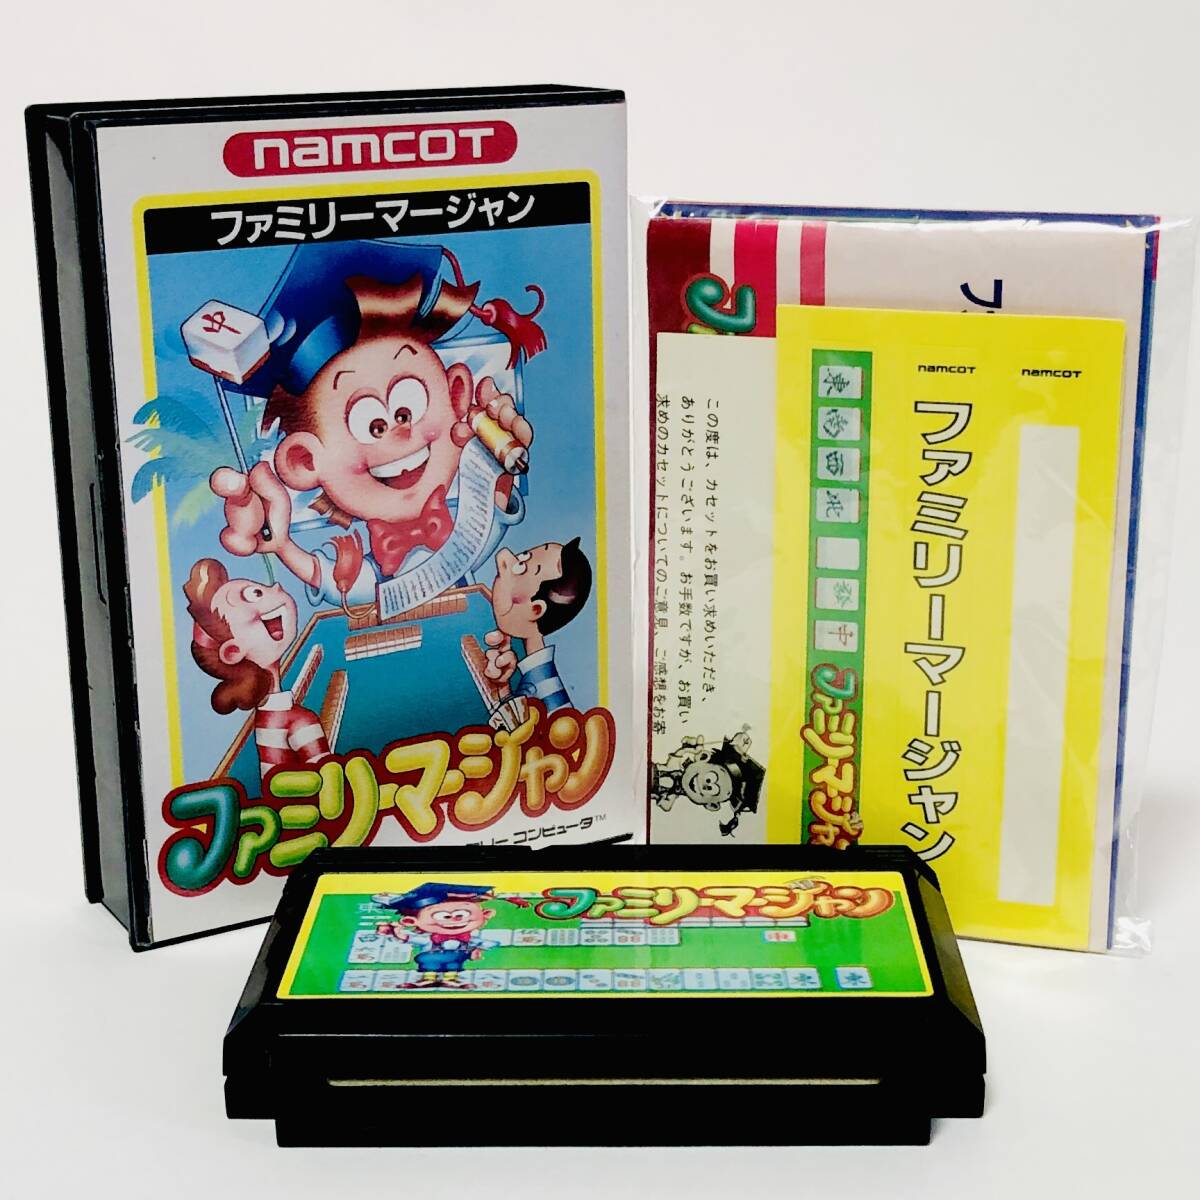 ファミコン ファミリーマージャン 箱説付き 痛みあり ナムコ ナムコット Nintendo Famicom Family Mahjong CIB Tested Namco Namcot_画像1